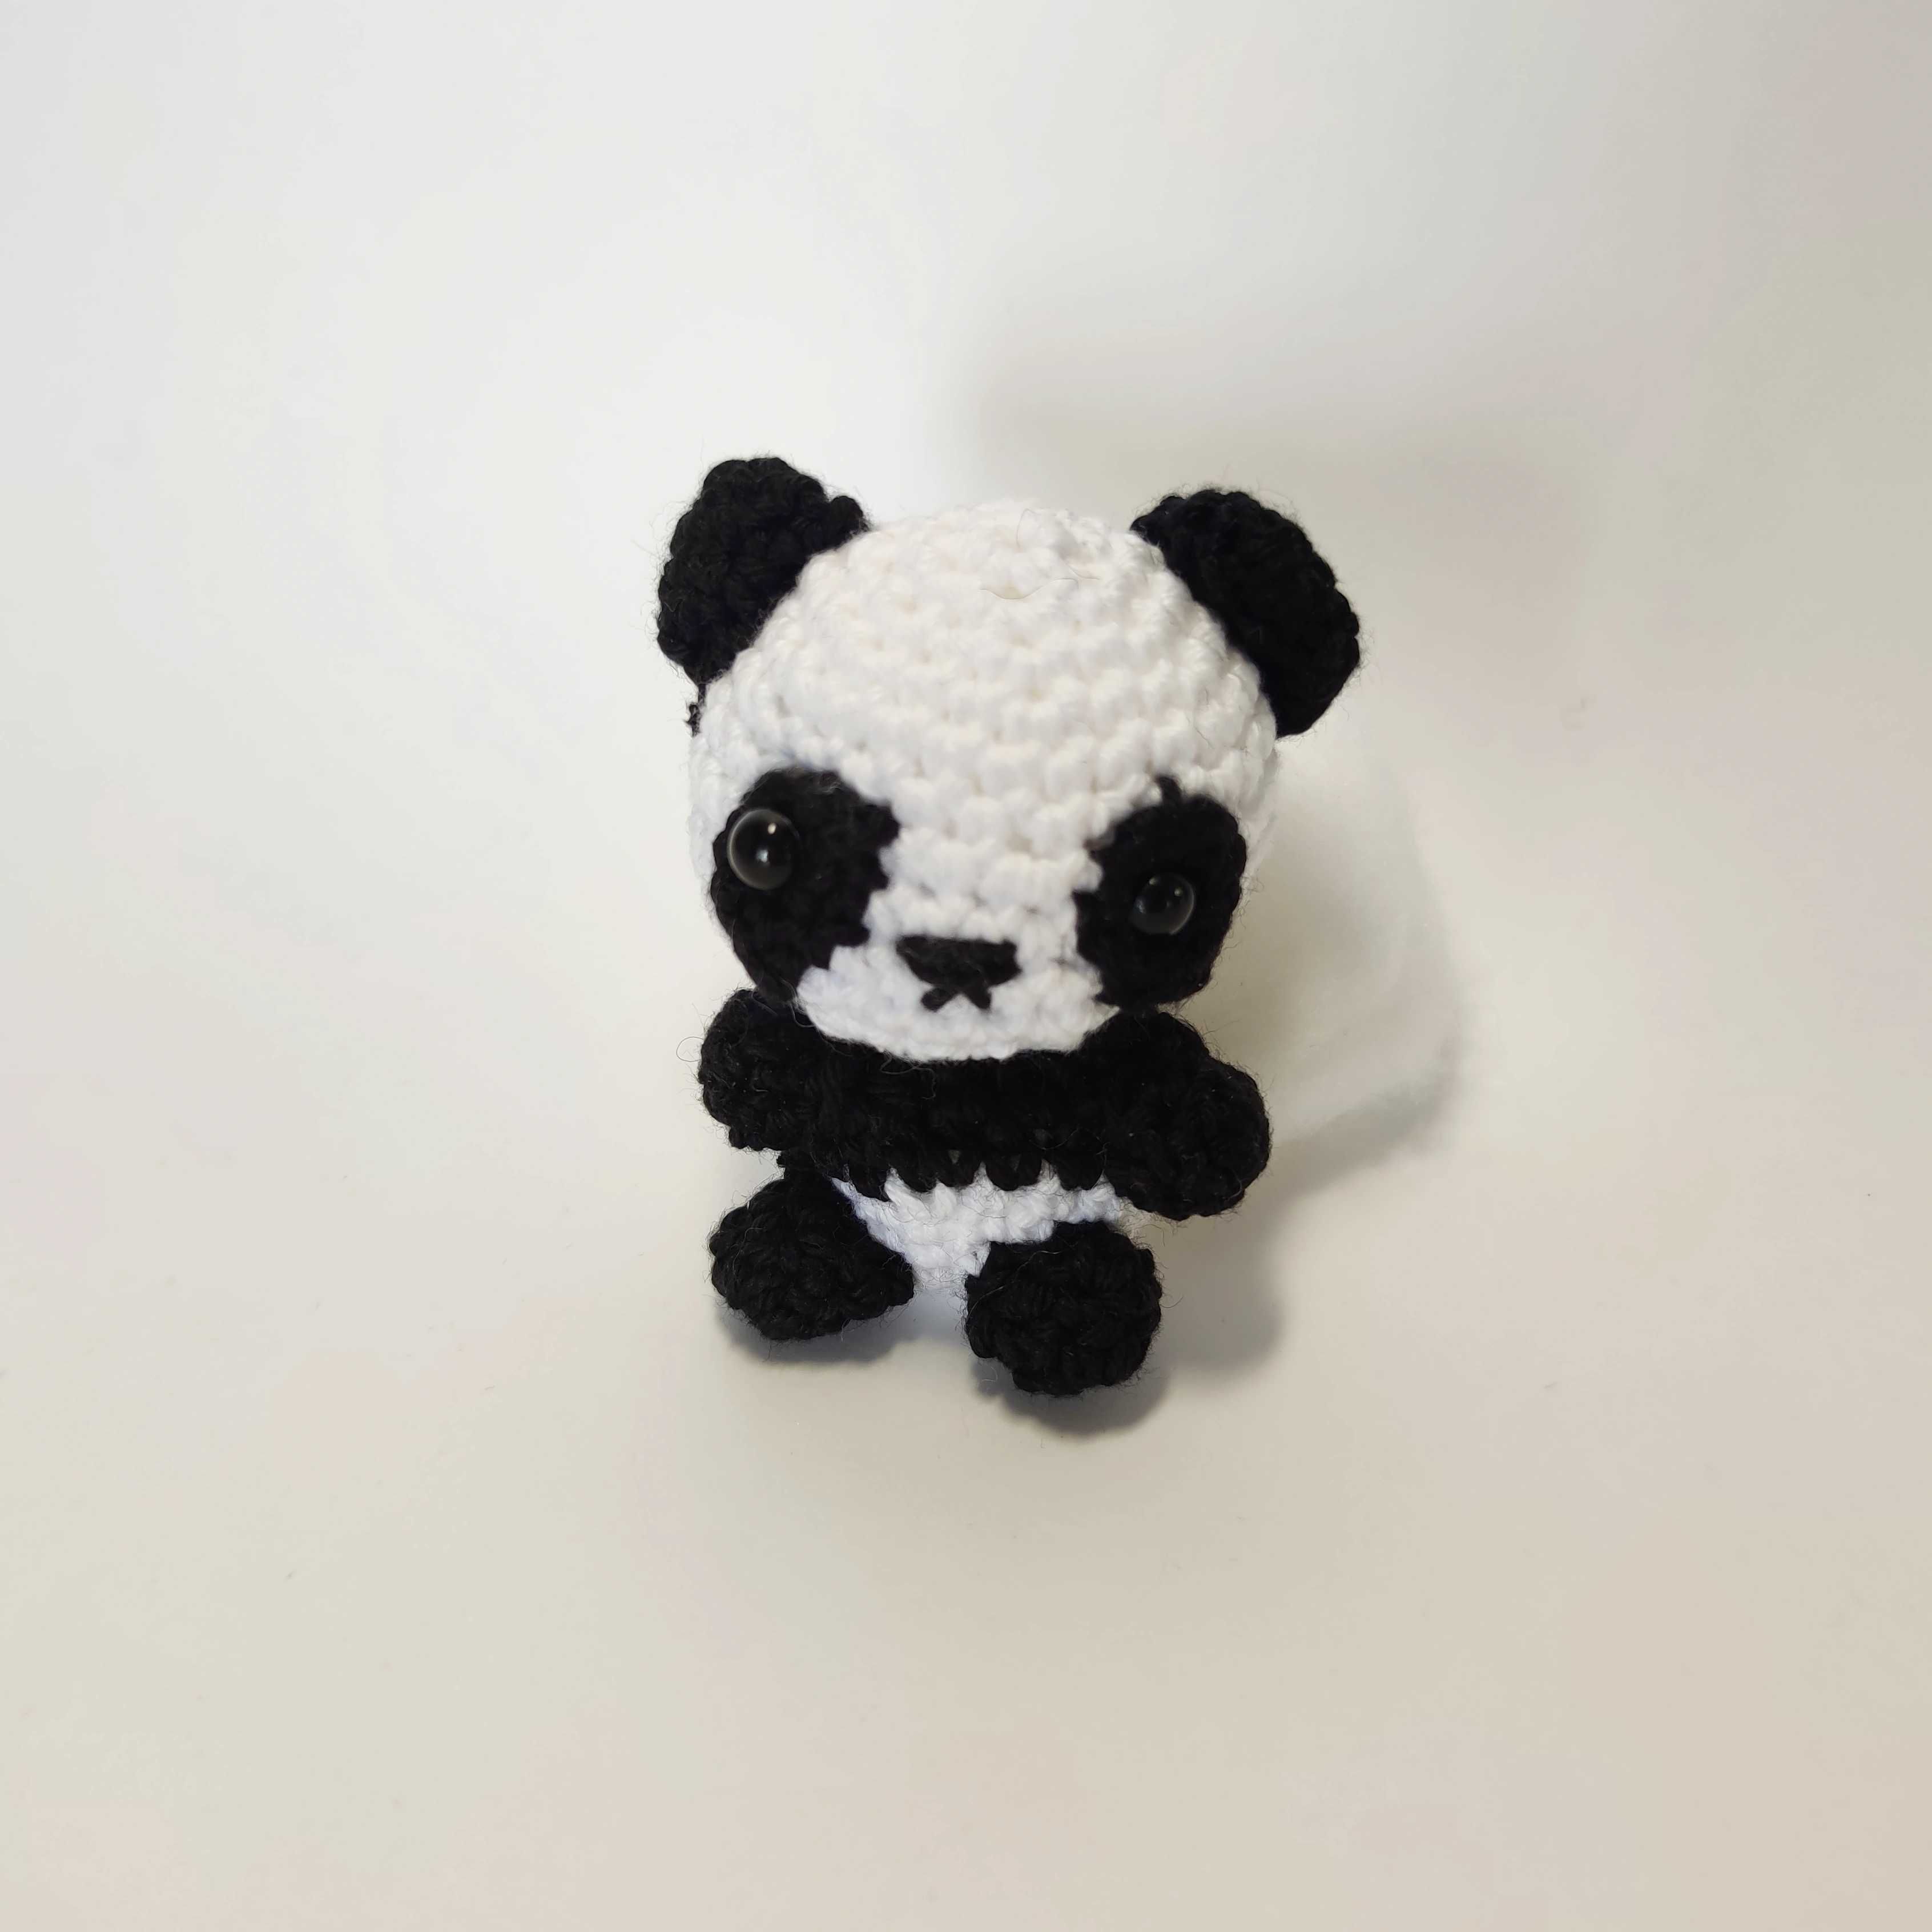 Breloczek handmade panda amigurumi